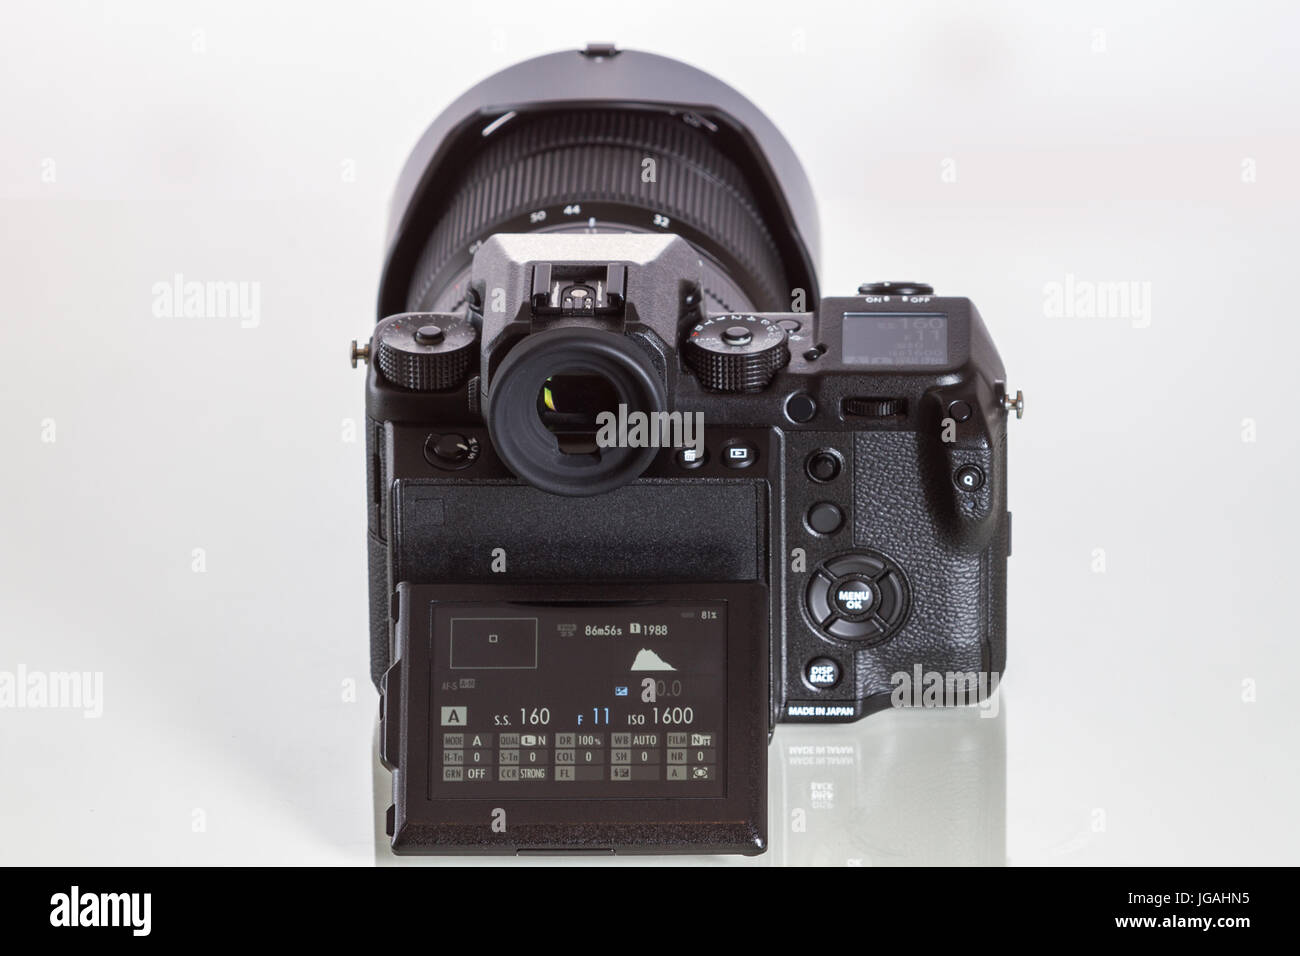 Fujifilm GFX 50er, 51 Megapixel, Sensor digitale Mittelformatkamera mit 3.2″ kippen Bildschirm auf weißem Hintergrund reflektiert Stockfoto